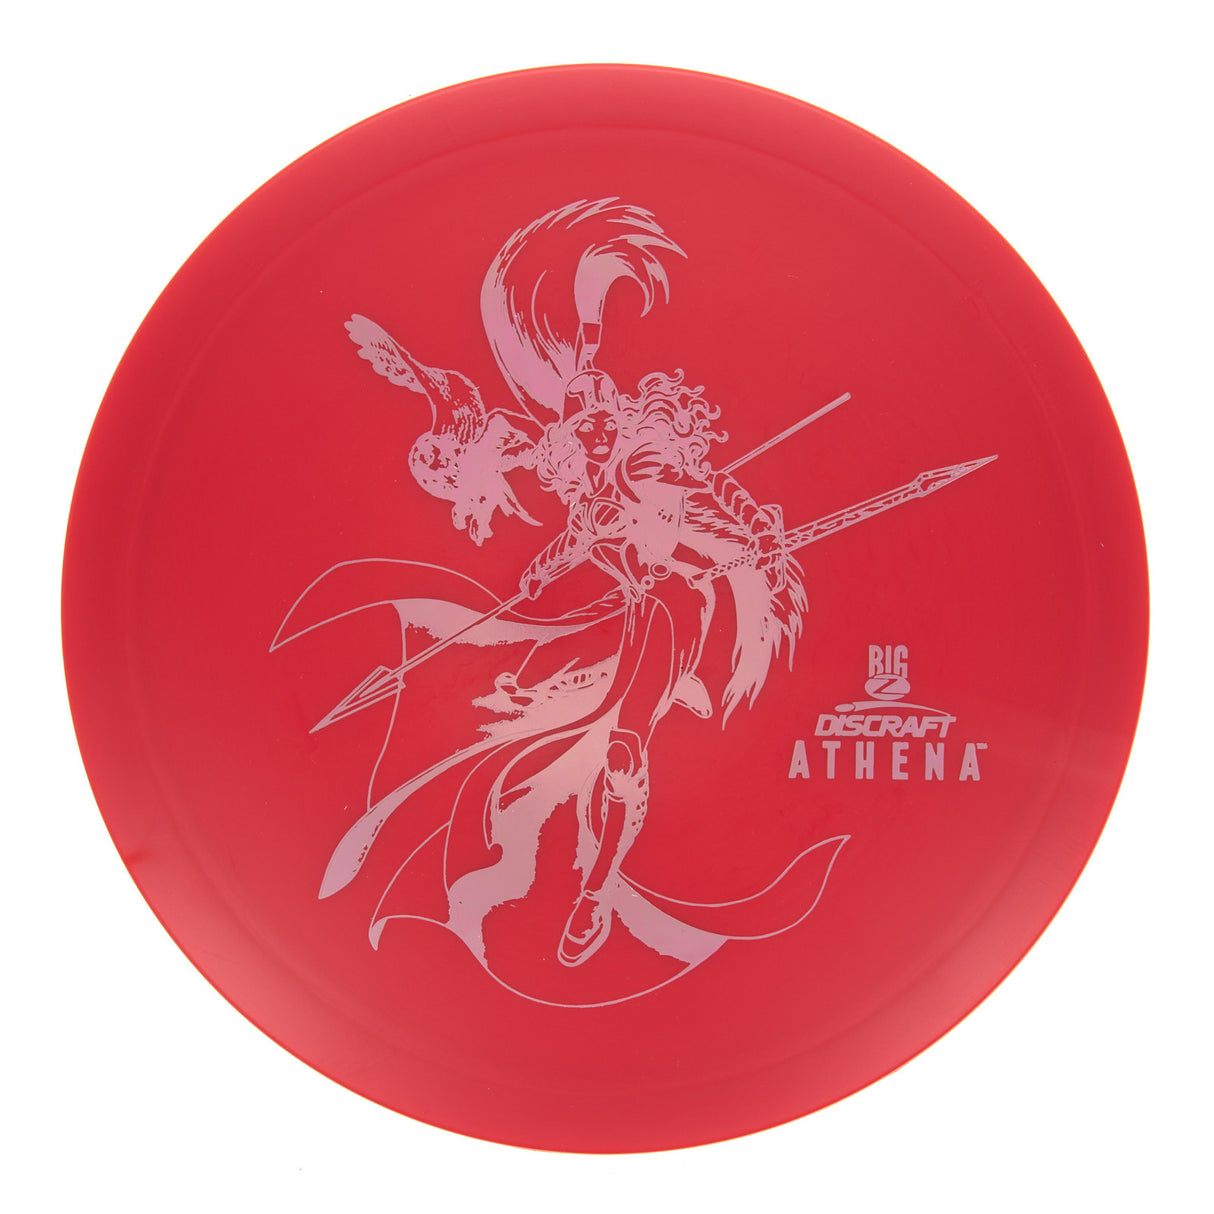 Discraft Athena - Big Z 175g | Style 0003